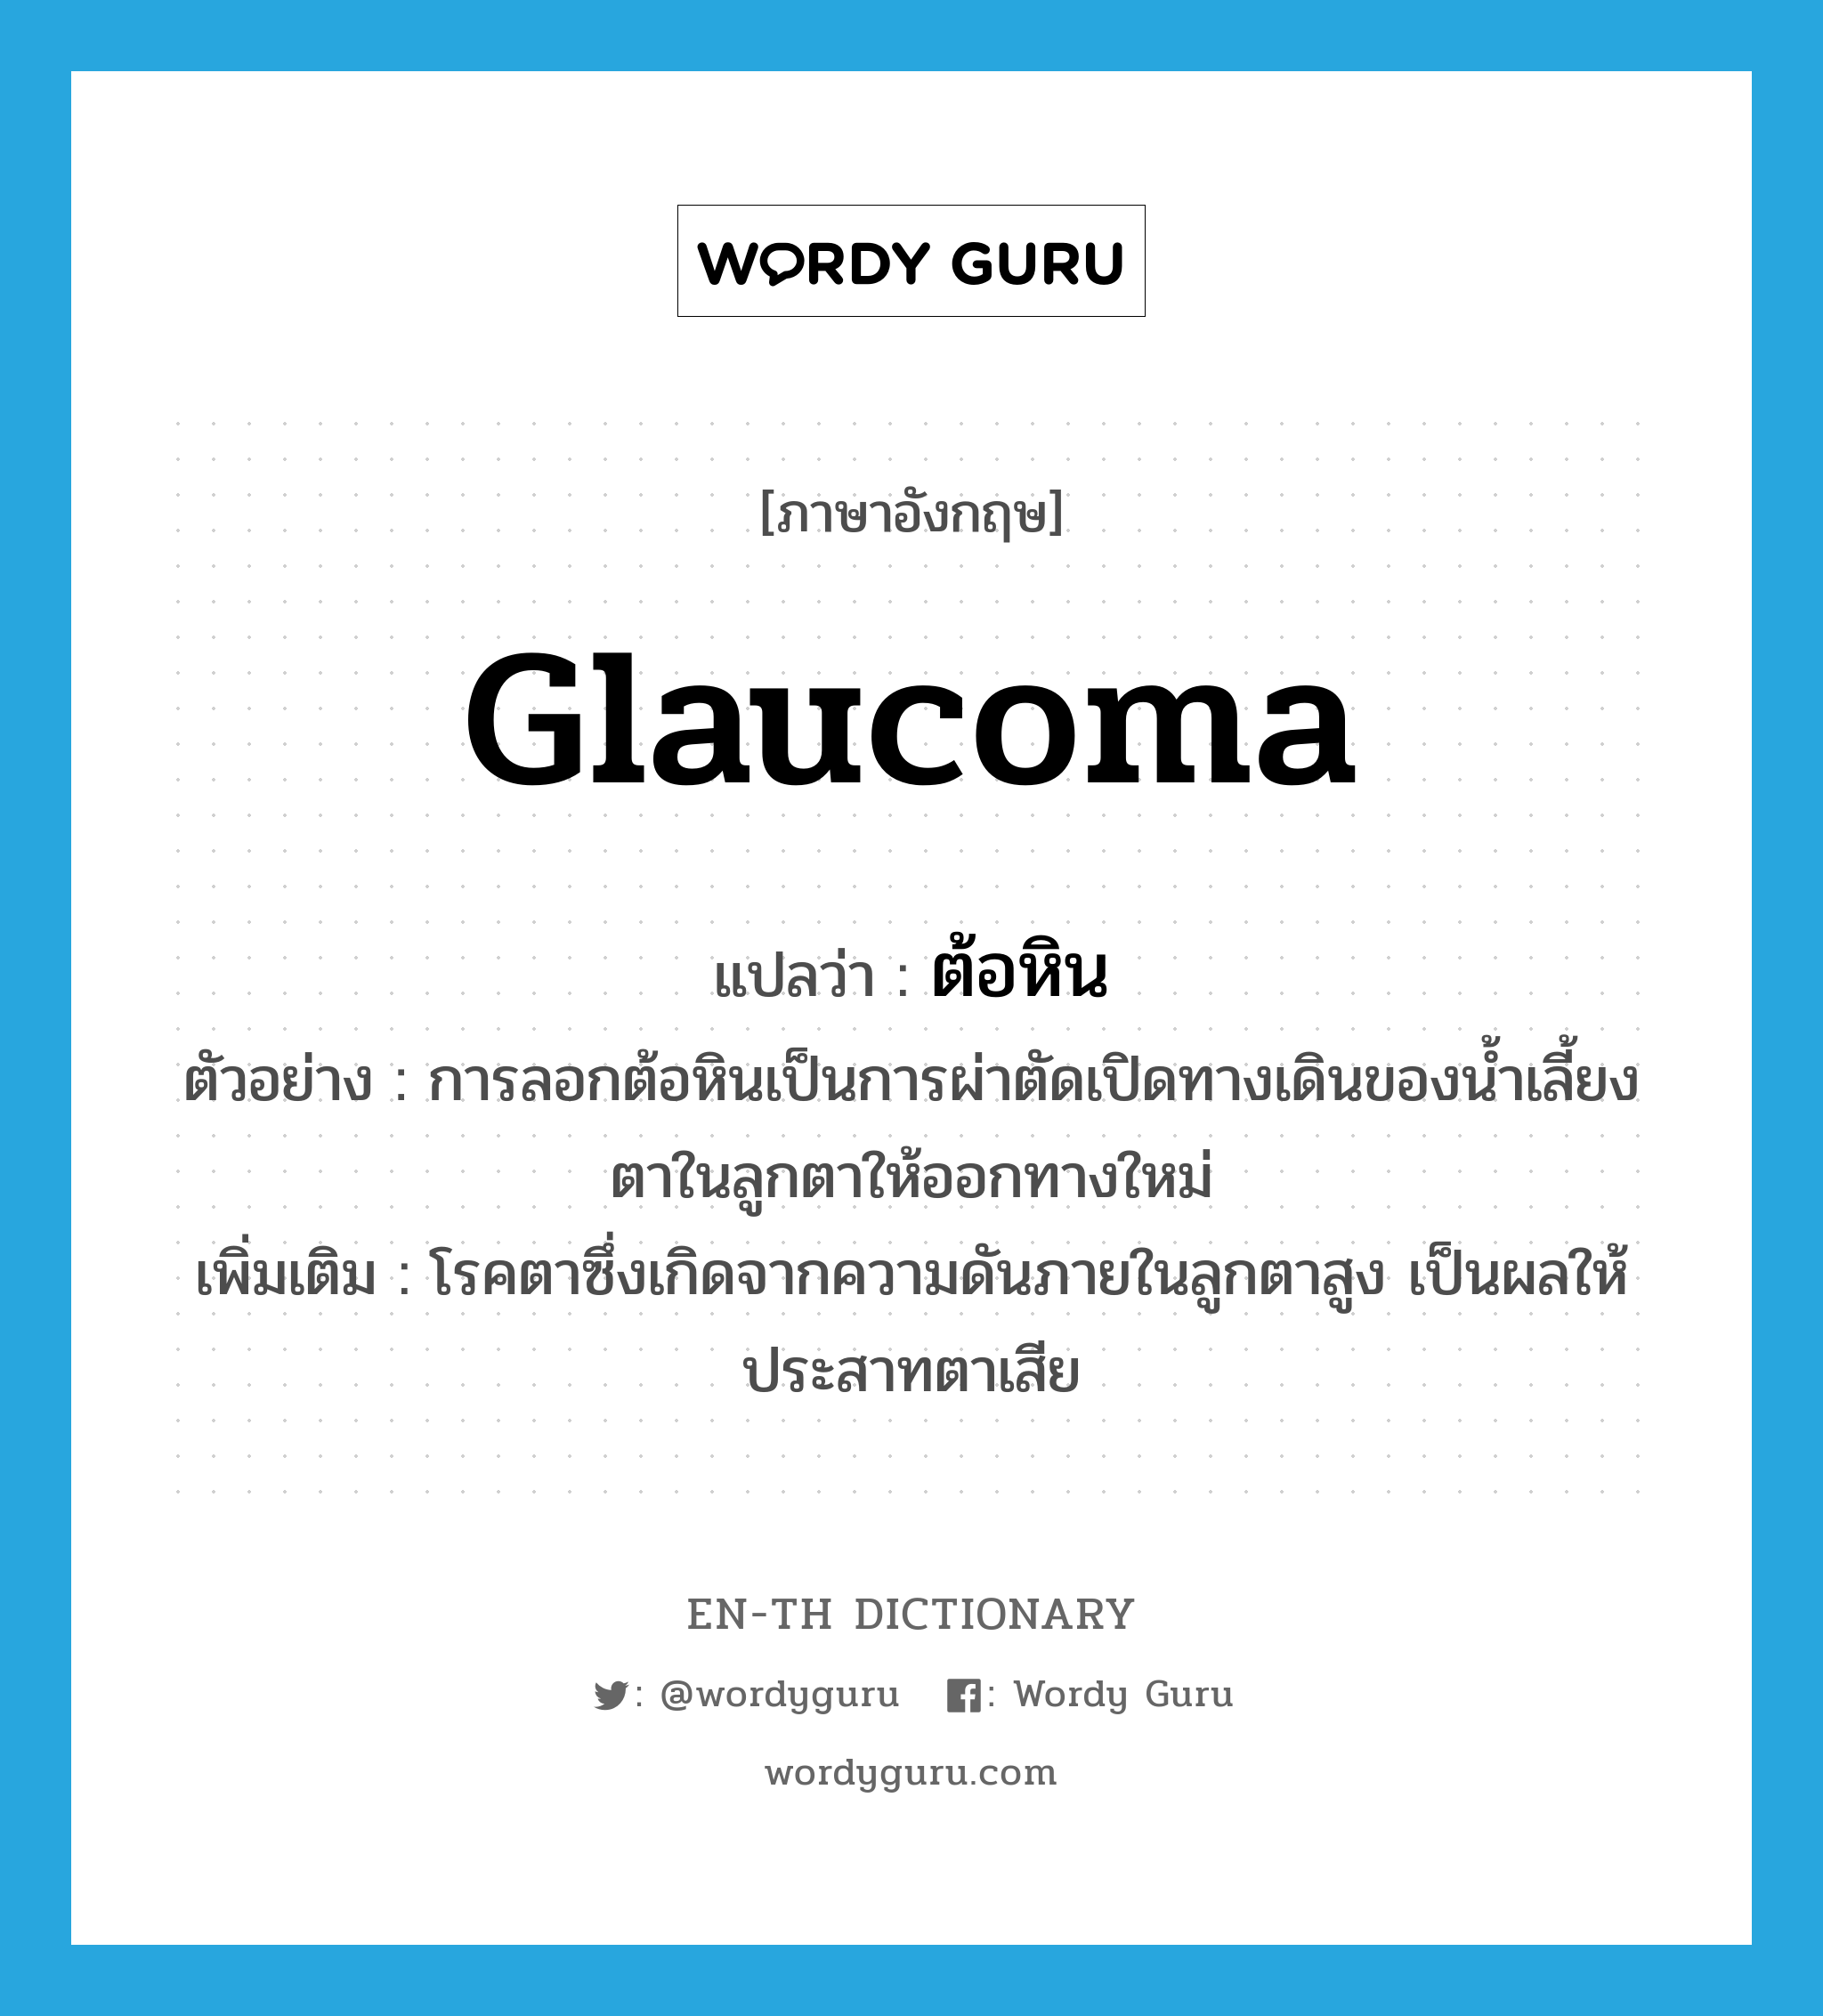 ต้อหิน ภาษาอังกฤษ?, คำศัพท์ภาษาอังกฤษ ต้อหิน แปลว่า glaucoma ประเภท N ตัวอย่าง การลอกต้อหินเป็นการผ่าตัดเปิดทางเดินของน้ำเลี้ยงตาในลูกตาให้ออกทางใหม่ เพิ่มเติม โรคตาซึ่งเกิดจากความดันภายในลูกตาสูง เป็นผลให้ประสาทตาเสีย หมวด N